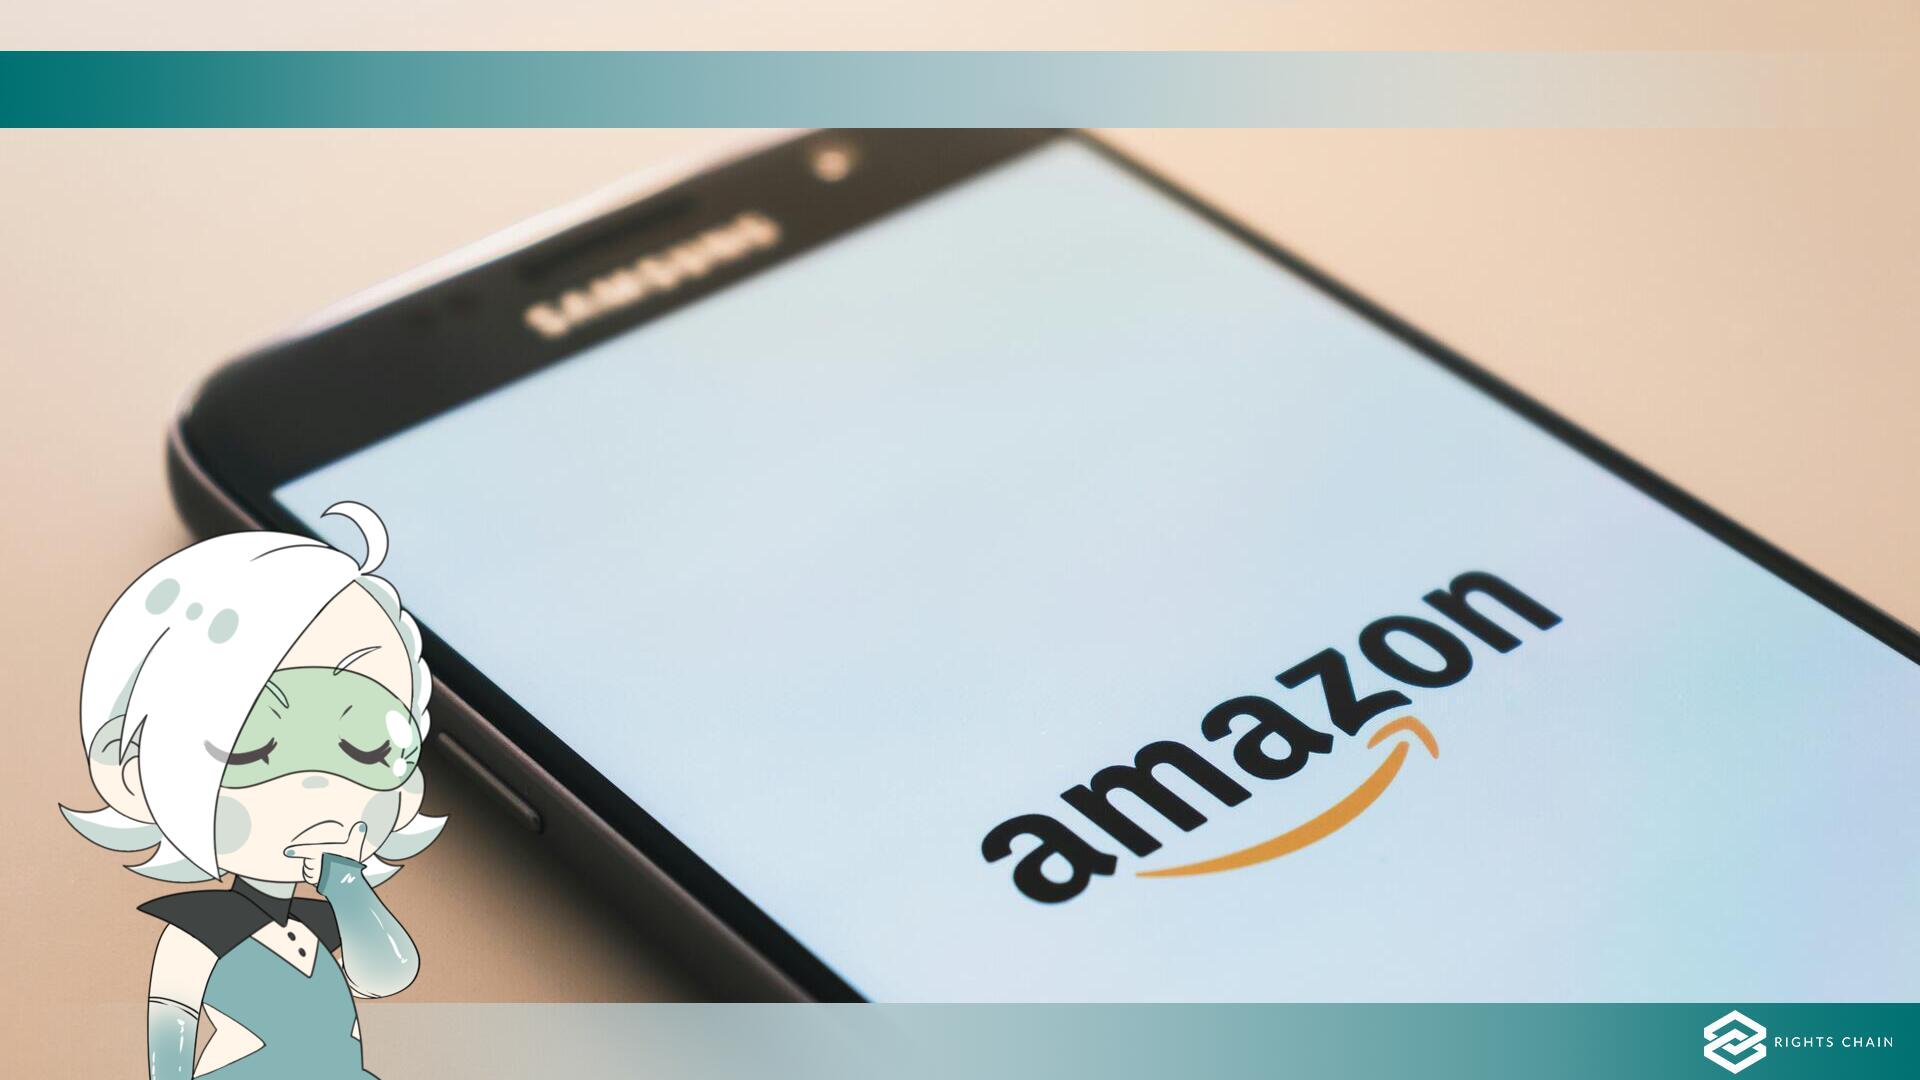 Il chatbot nascosto di Amazon consiglia libri nazisti e mente sulle condizioni di lavoro della compagnia.